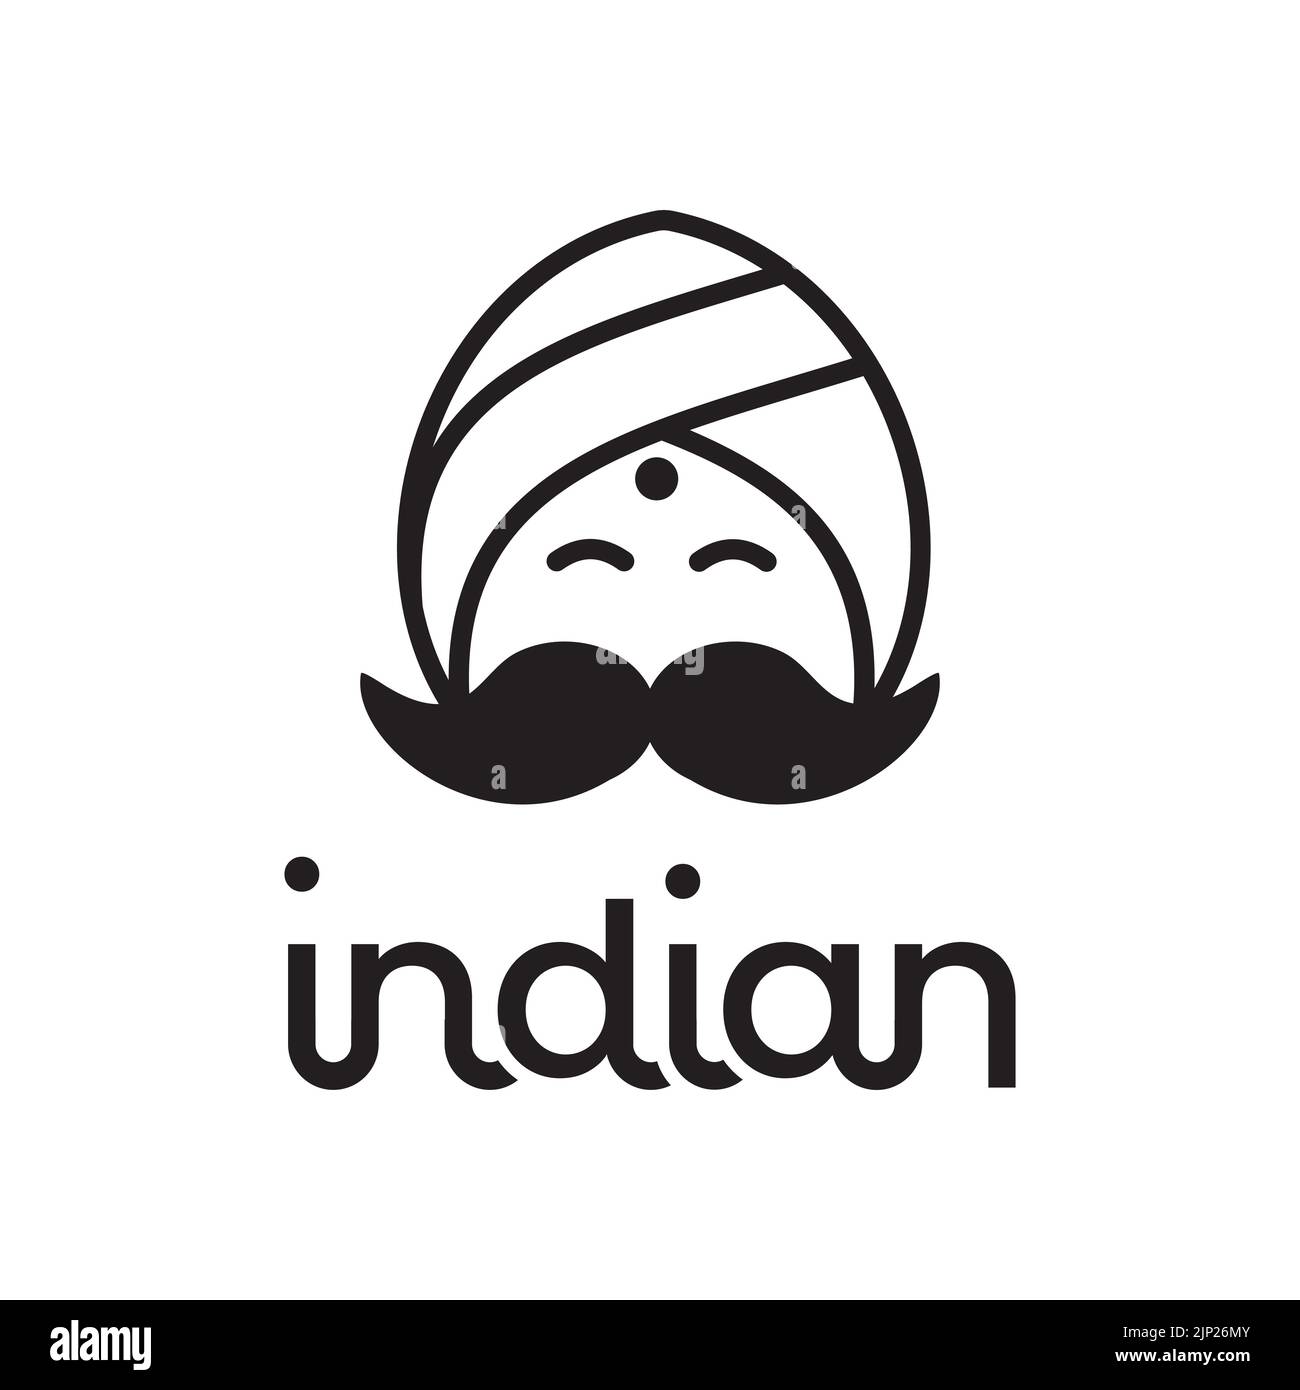 Indian smiling face man logo cartoon illustration design, circular turban vector Stock Vector